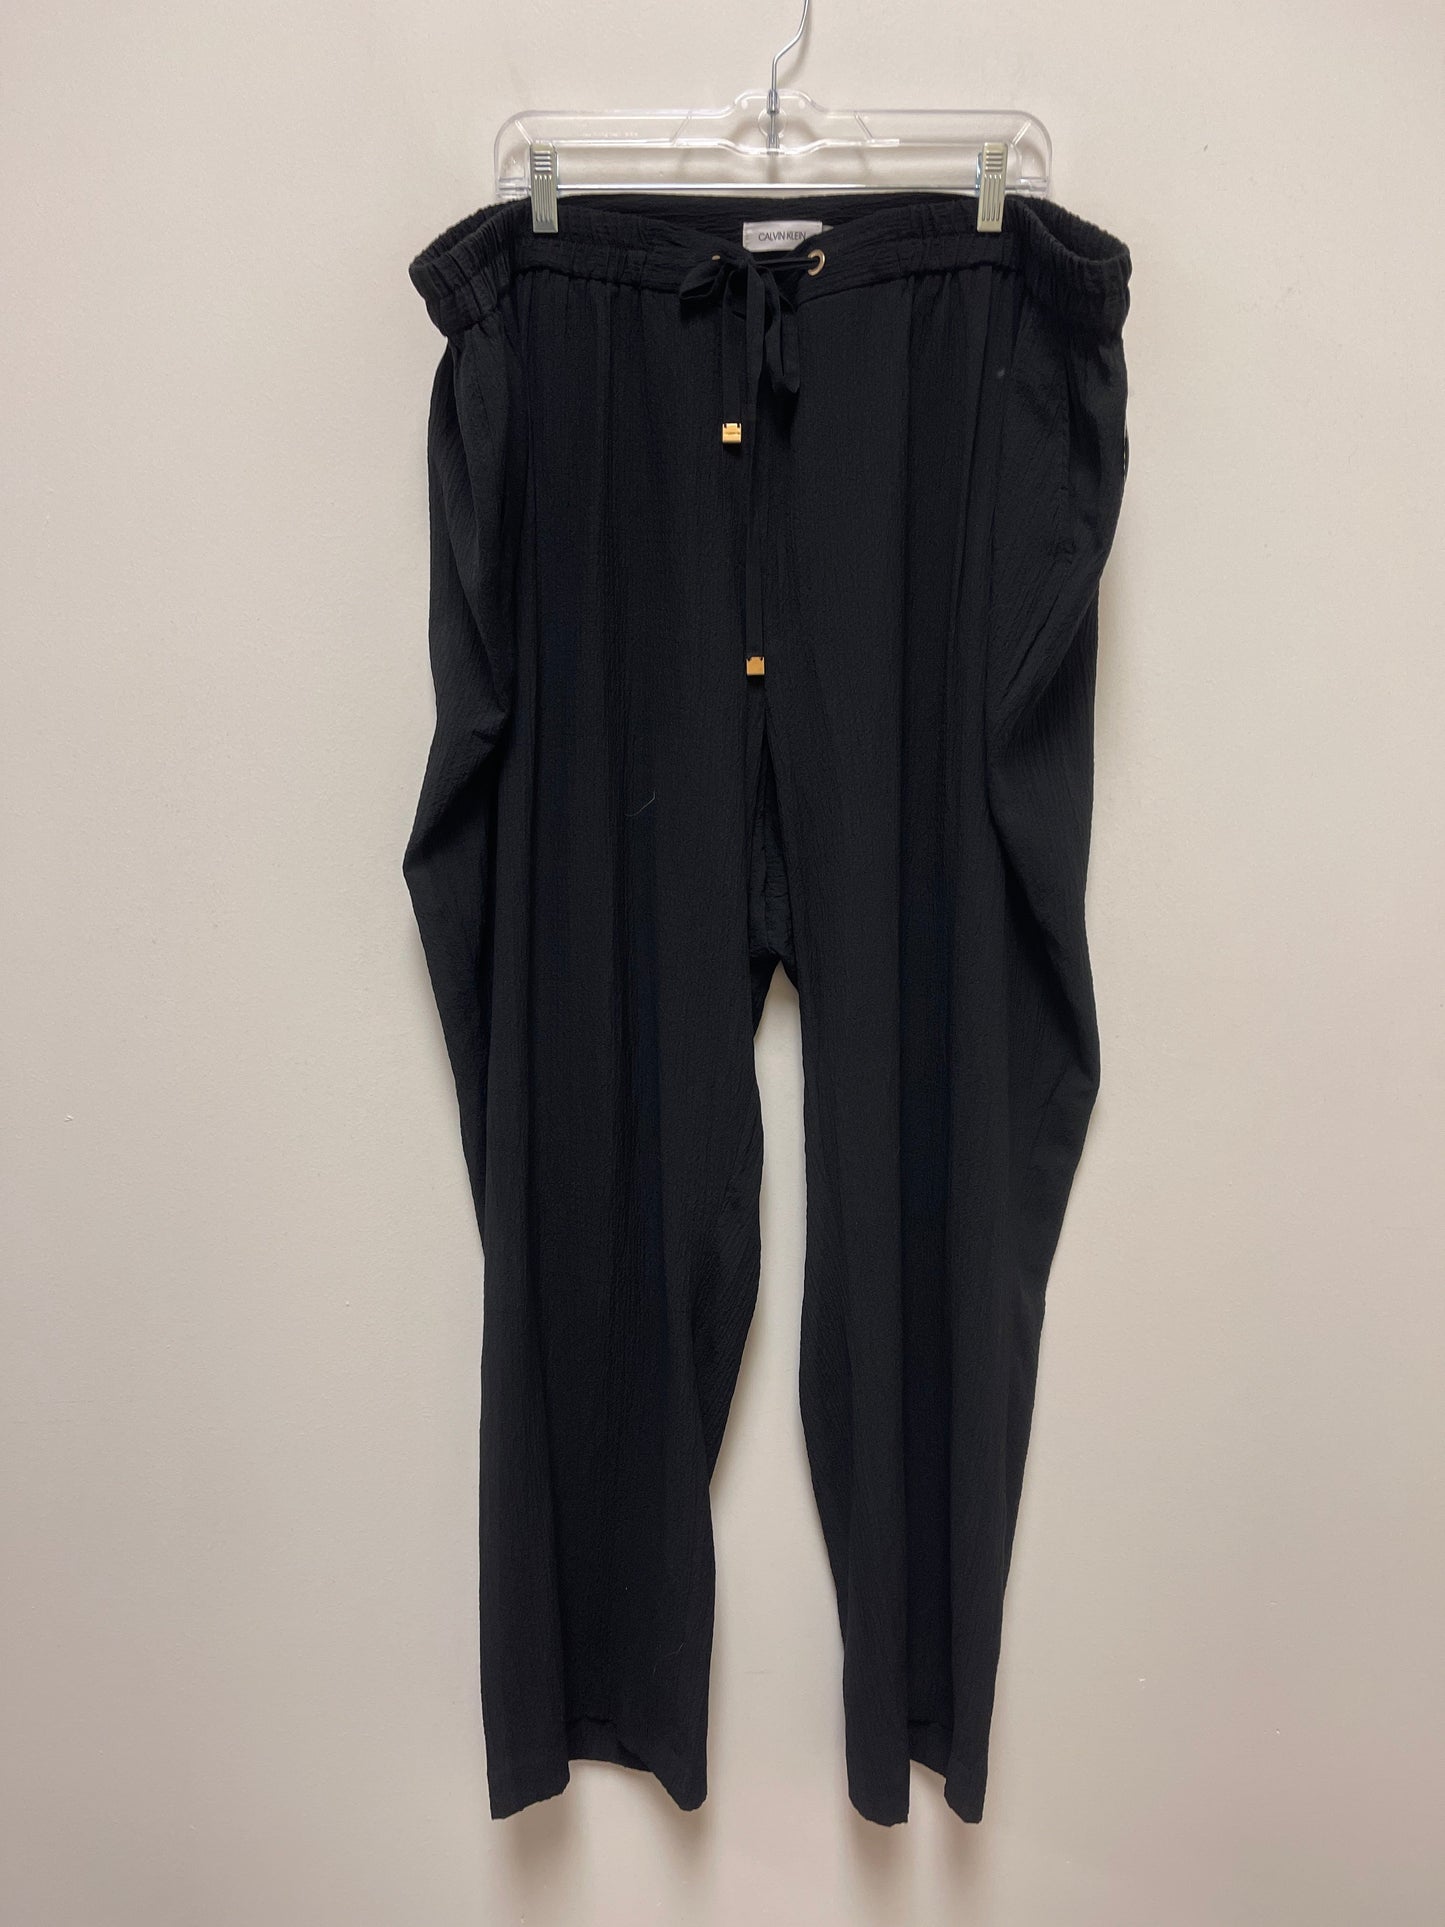 Pants Linen By Calvin Klein  Size: 3x